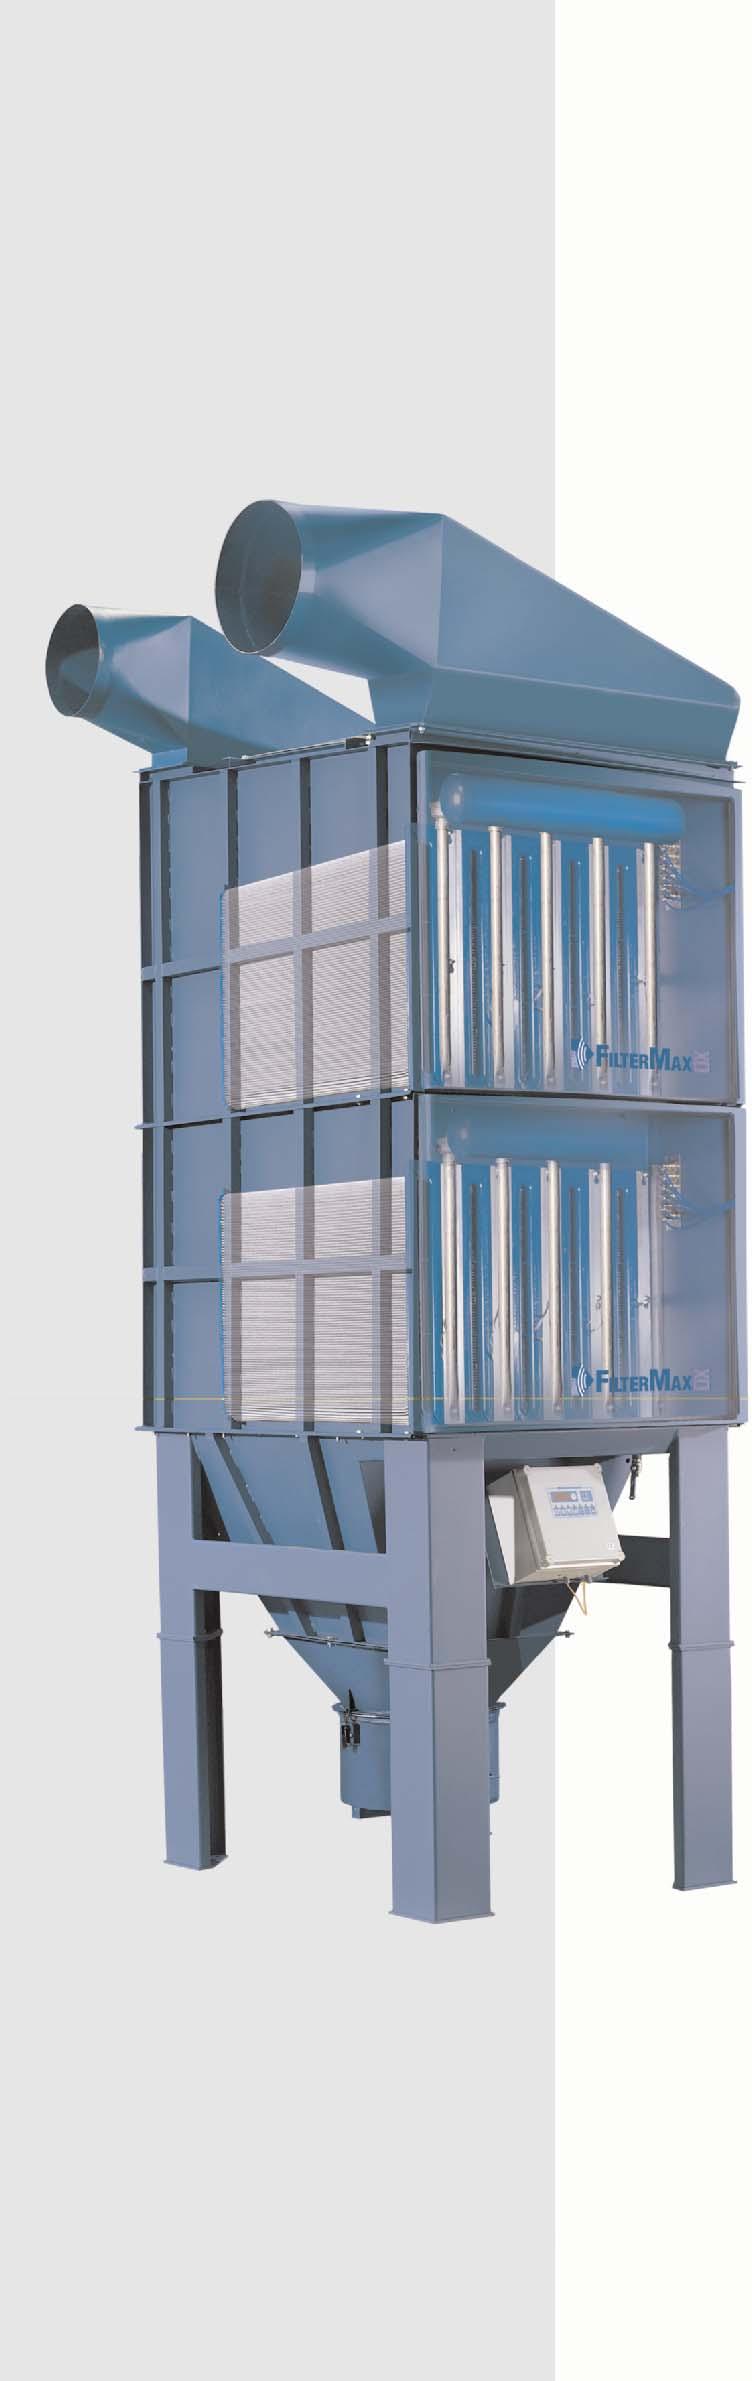 Filtrazione FilterMax per tutti i tipi di polvere Il FilterMax è un sistema filtrante di tipo modulare, con elevata capacità di filtrazione a regime continuo.